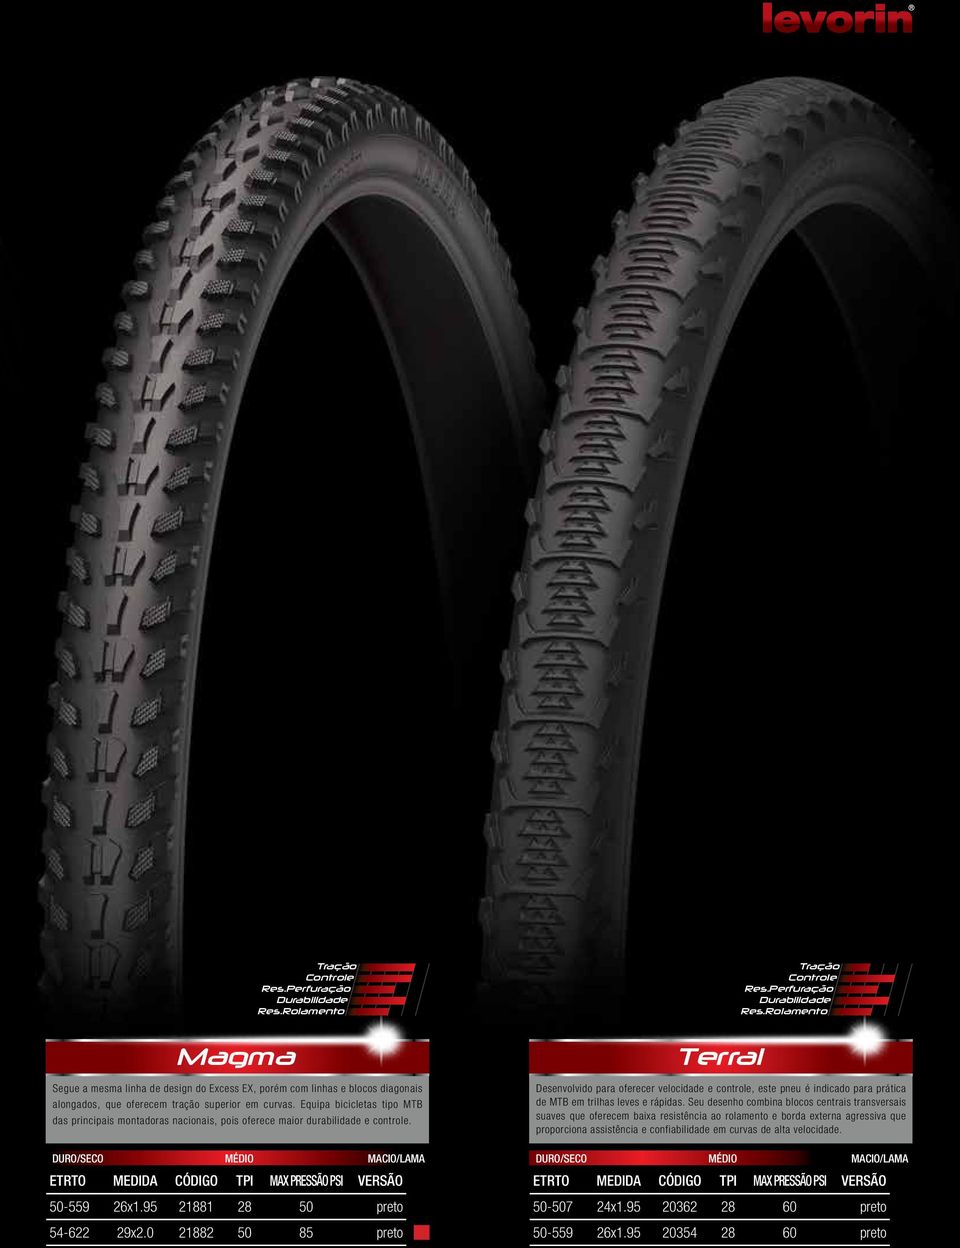 0 21882 50 85 preto Terral Desenvolvido para oferecer velocidade e controle, este pneu é indicado para prática de MTB em trilhas leves e rápidas.